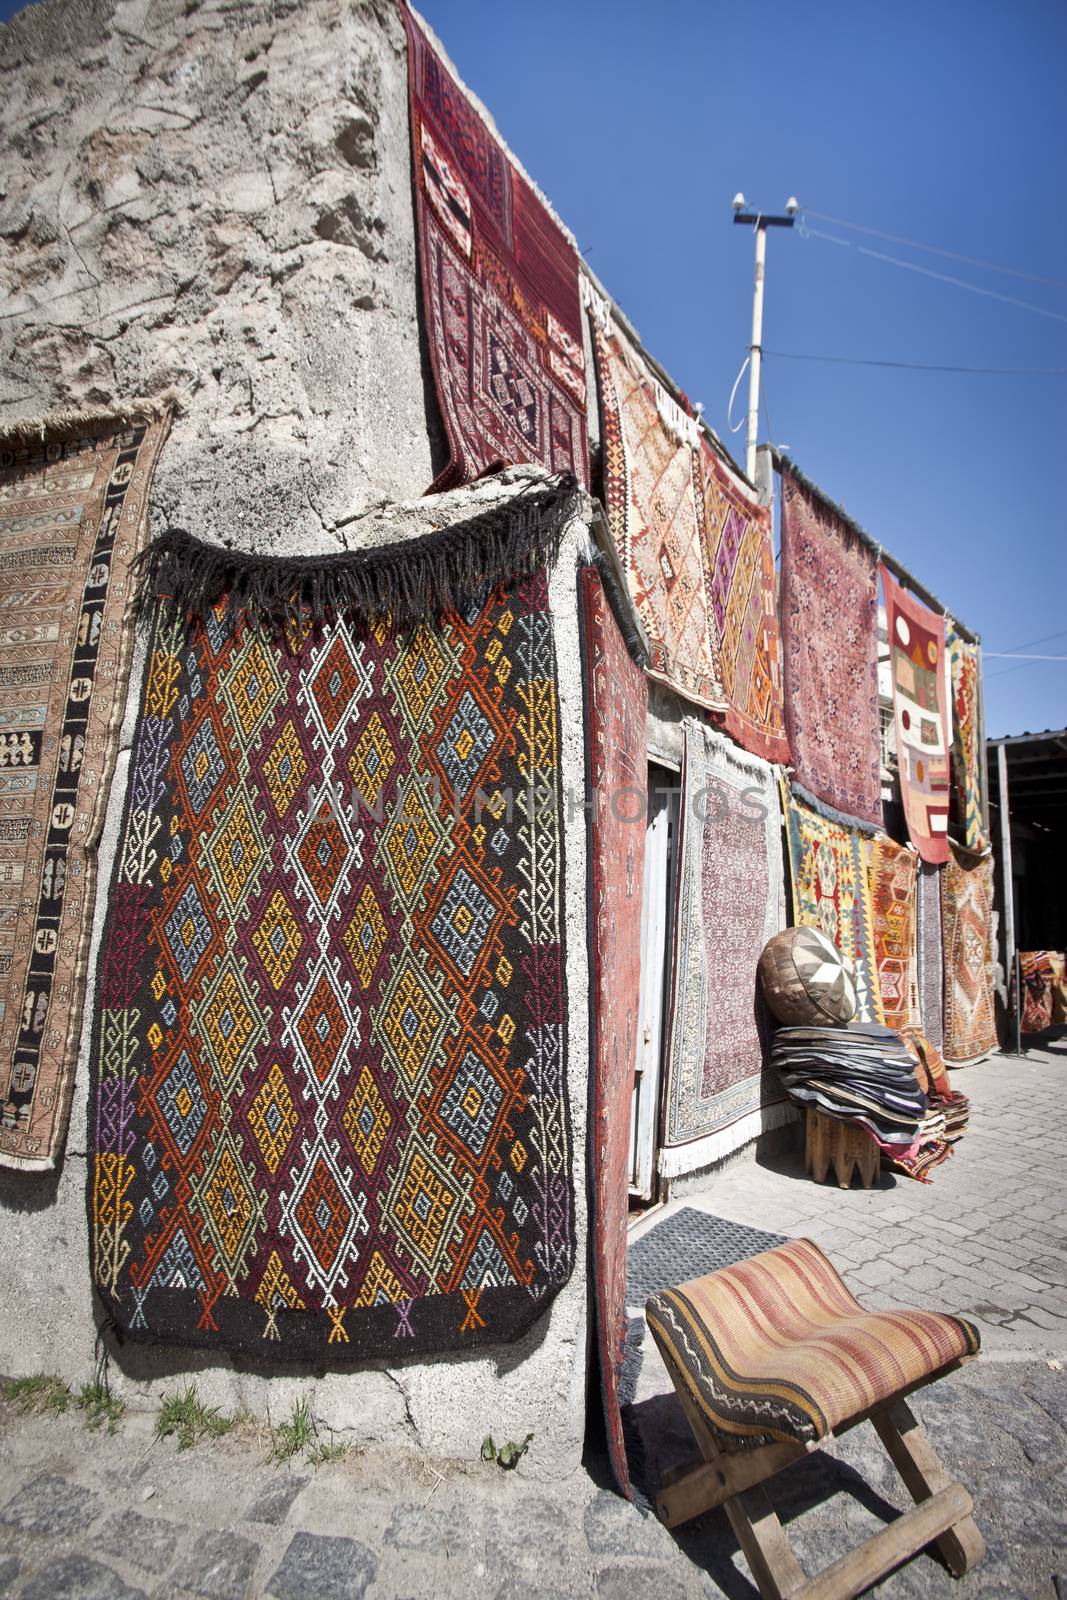 Vendor selling Turkish rugs in an outdoor bazaar